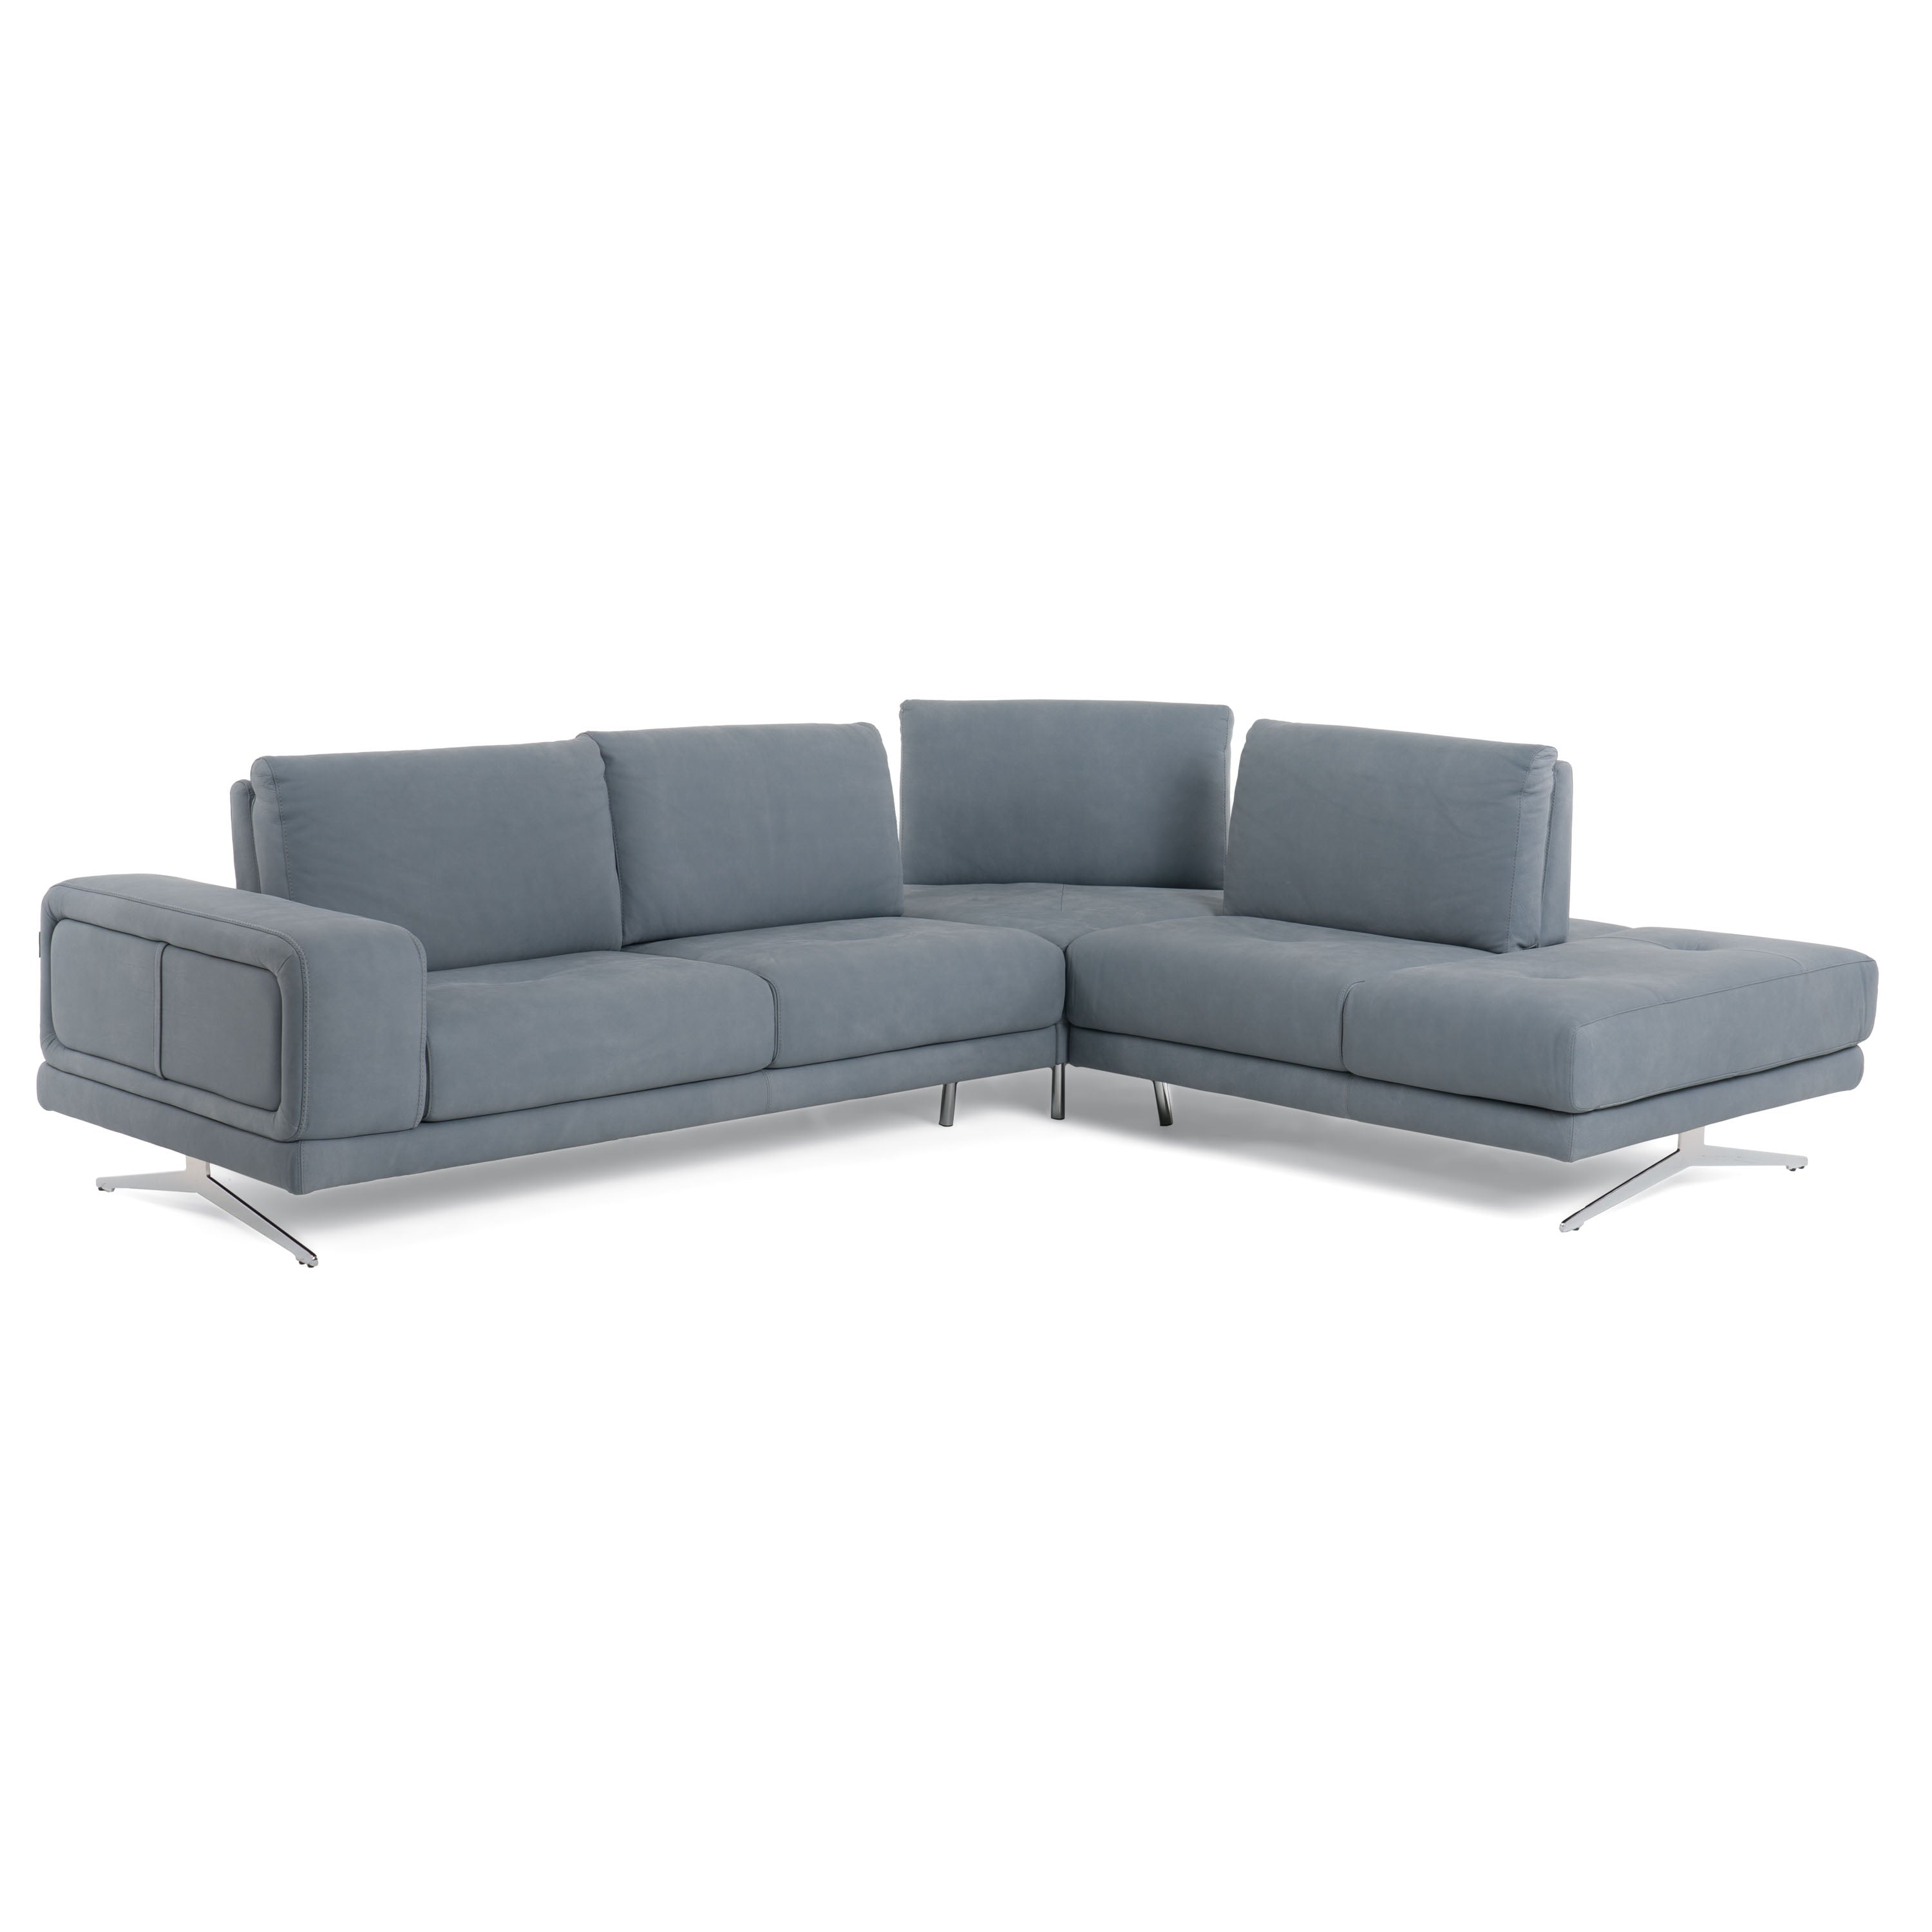 Vig Furniture Lamod Italia Mood - Contemporary Blue Leather Right Facing Sectional Sofa